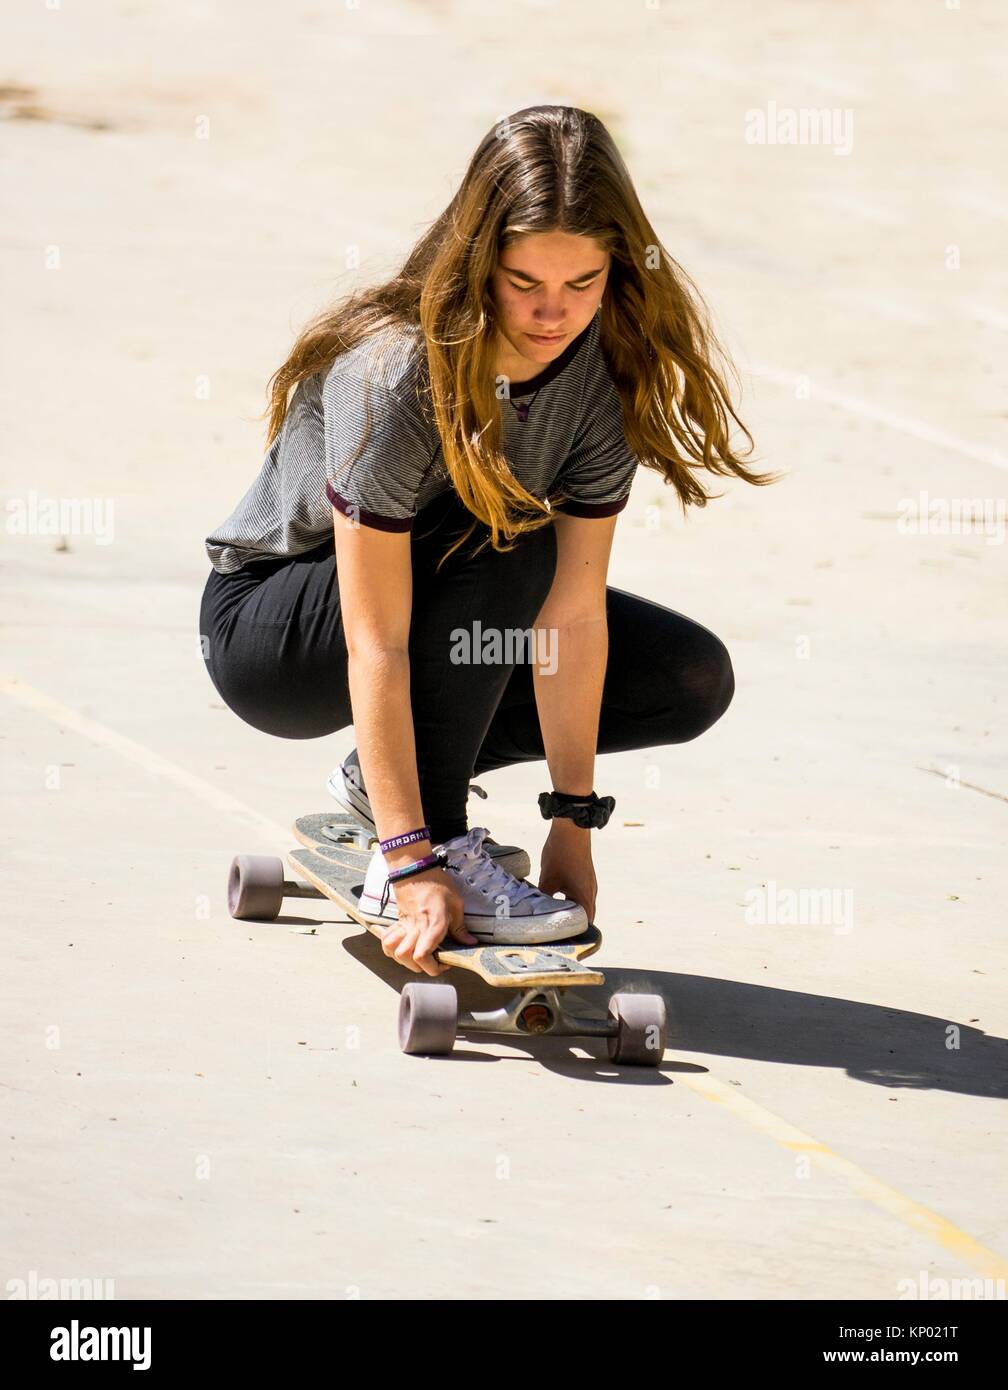 blonde girl skate Stock Photo - Alamy